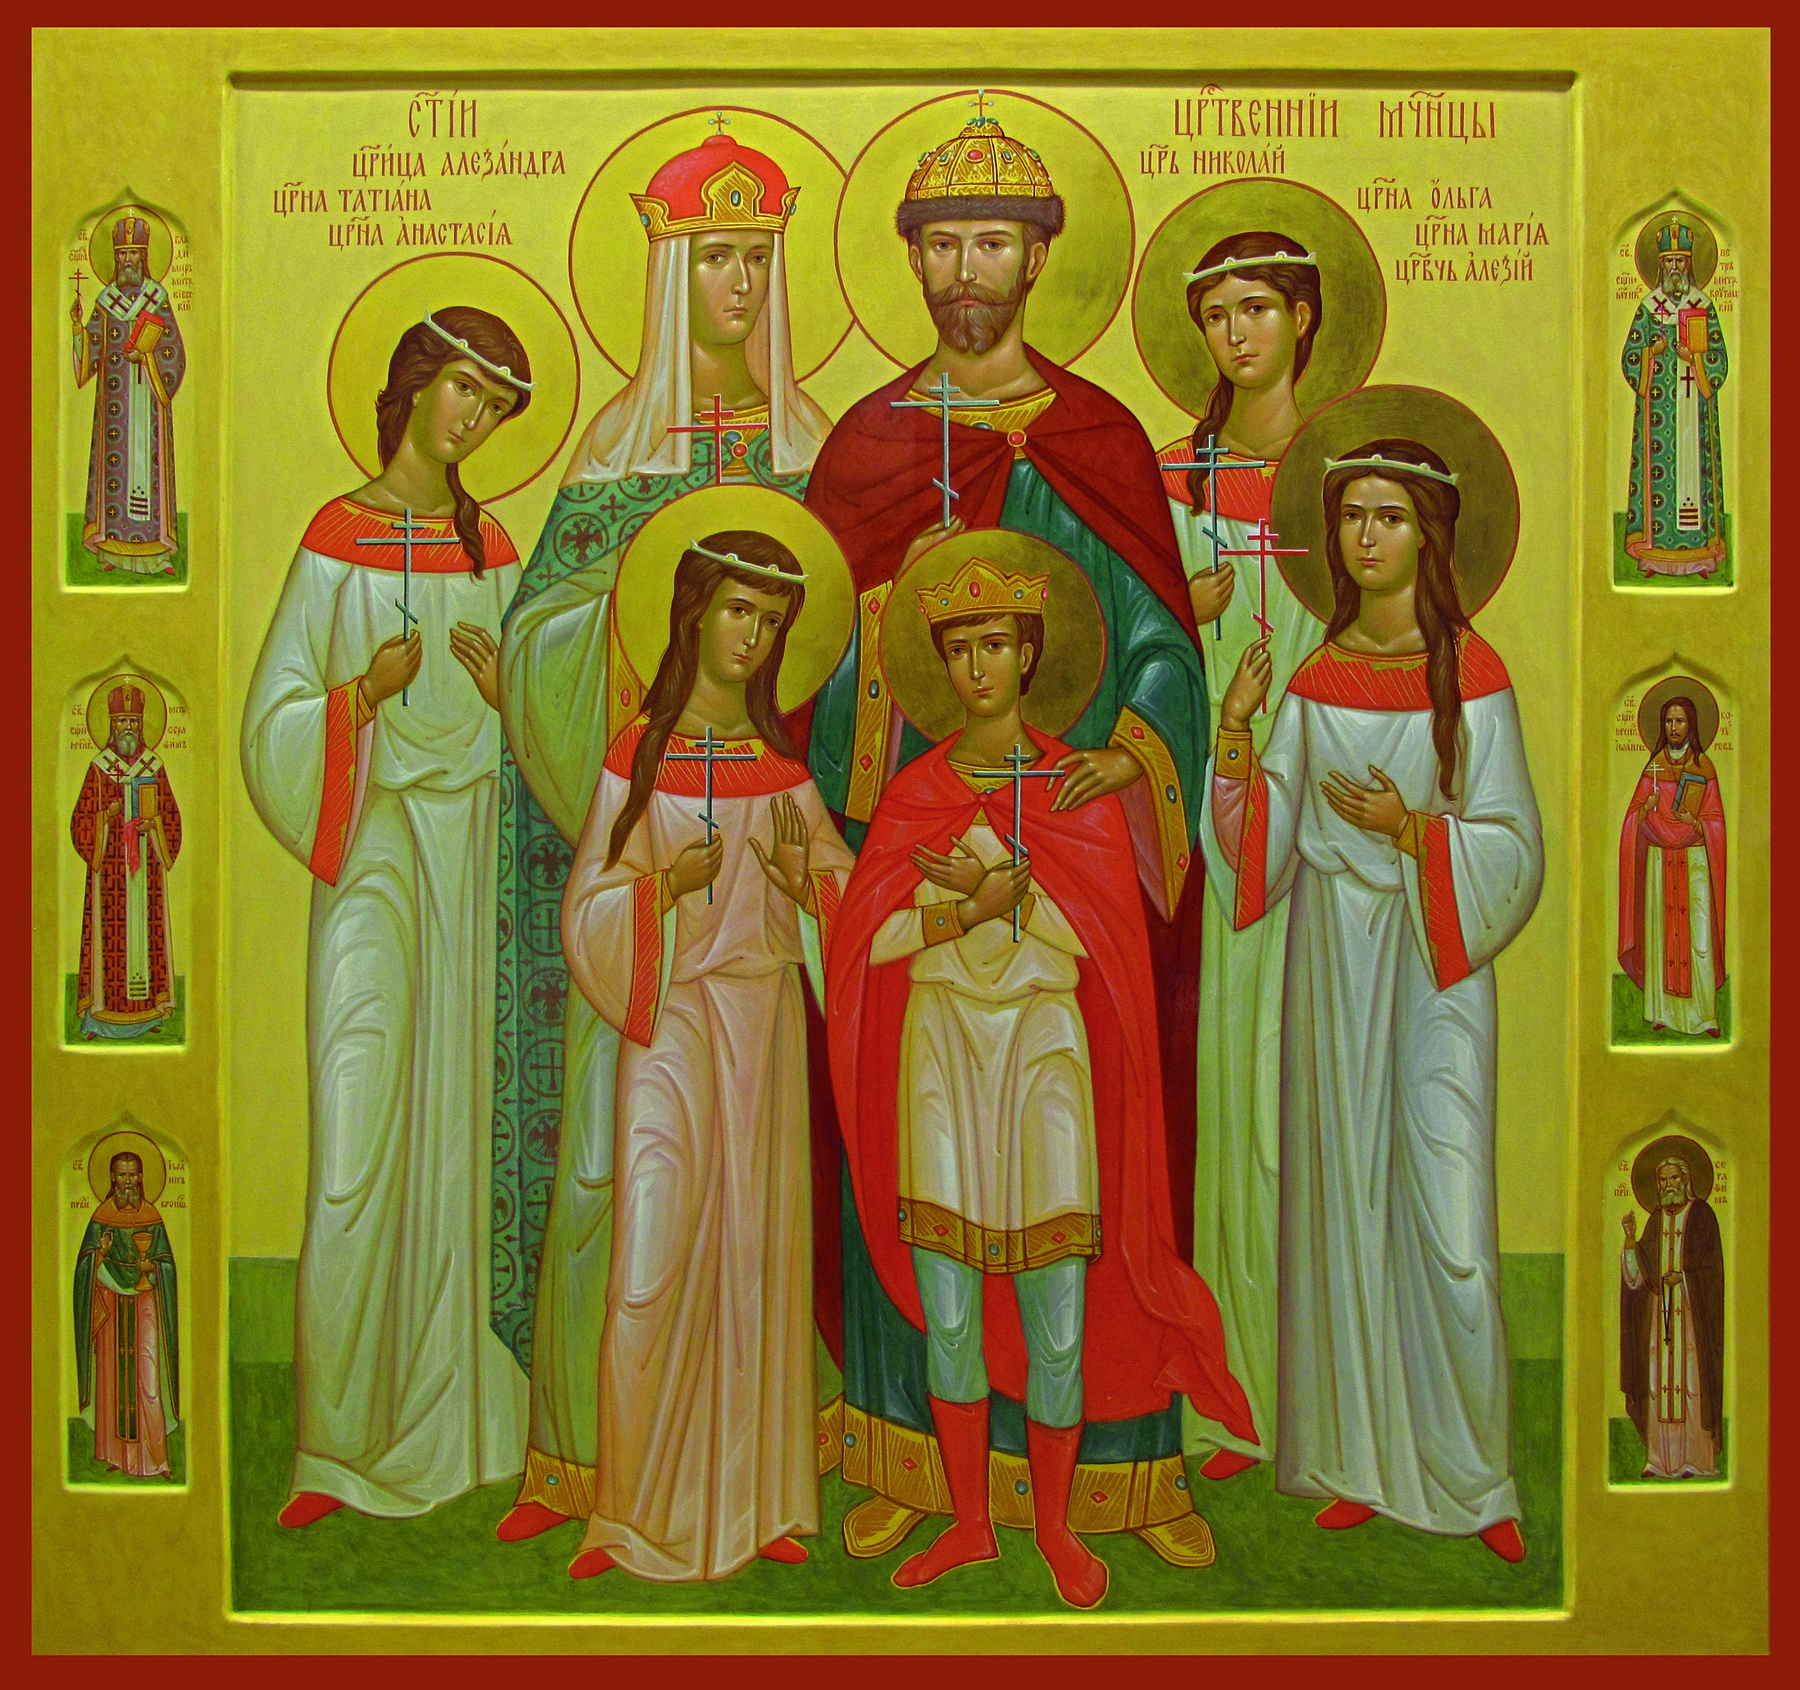 Pintura. Nicolau II de coroa e manto vermelho em pé. Ao redor dele sua mulher, quatro filhas e um filho. Todos têm uma auréola atrás da cabeça.